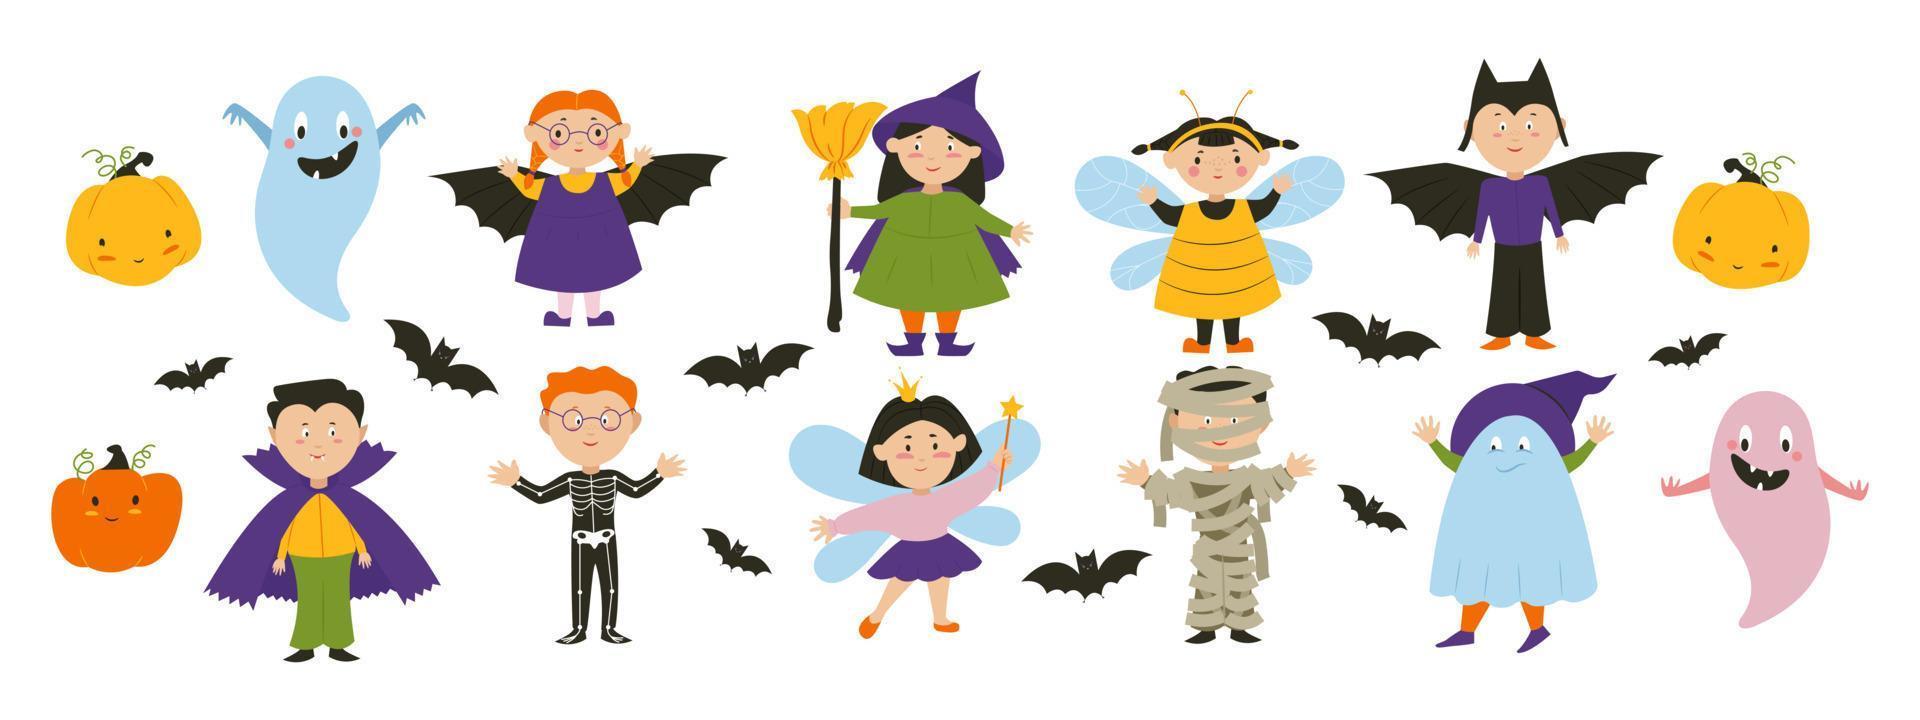 kinderen in dracula-, heks-, vleermuis- en feekostuums, halloween-feestkarakters. vector illustratie